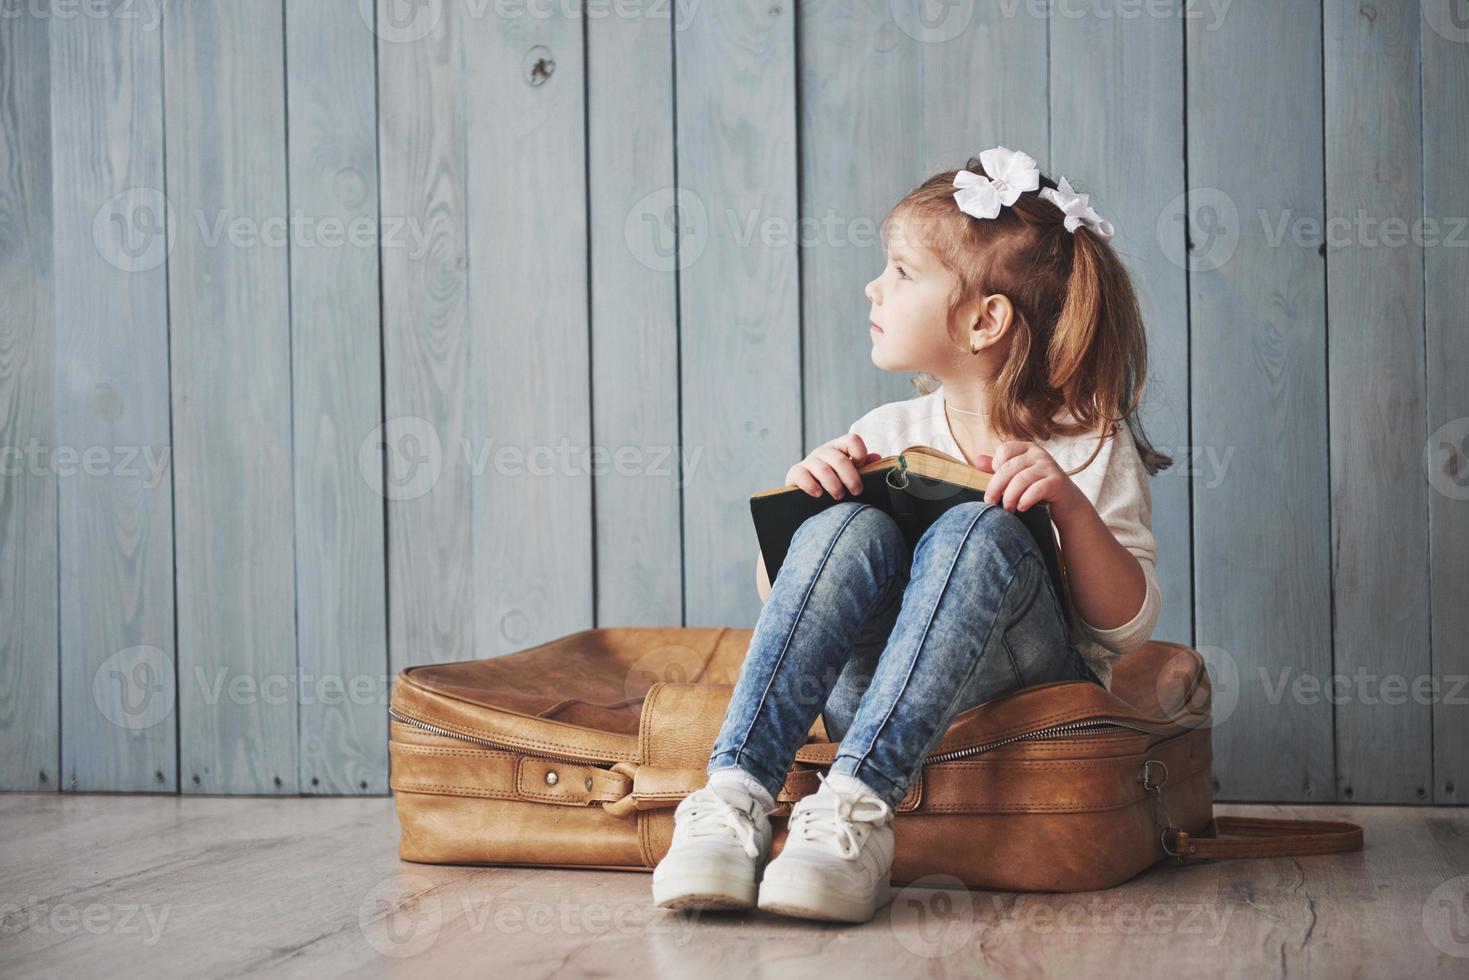 listo para grandes viajes. niña feliz leyendo un libro interesante con un maletín grande y sonriendo. concepto de viaje, libertad e imaginación. foto